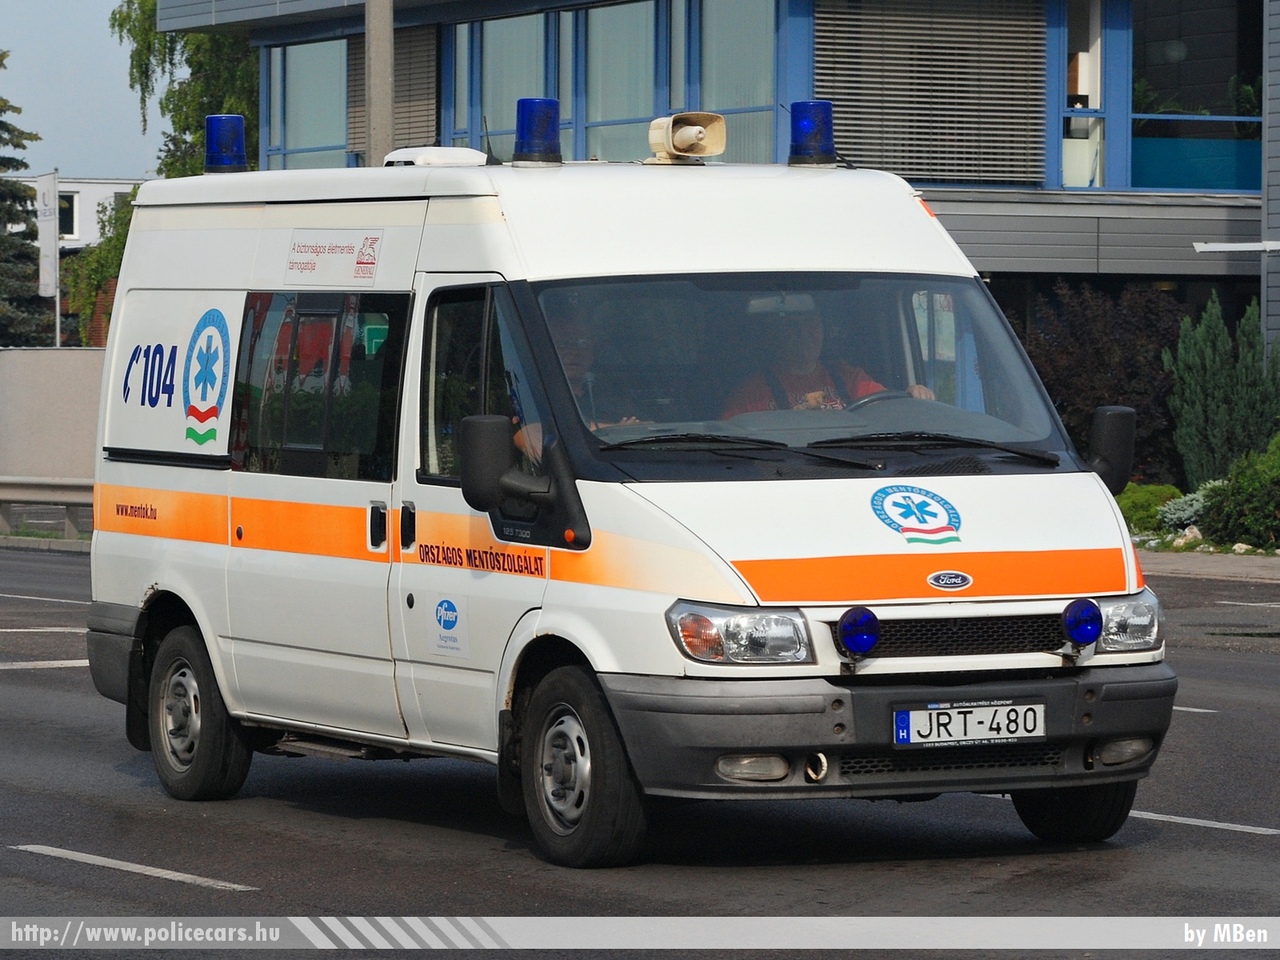 Ford Transit, Országos Mentõszolgálat, fotó: MBen
Keywords: magyar Magyarország mentő mentőautó OMSZ Hungary hungarian ambulance JRT-480